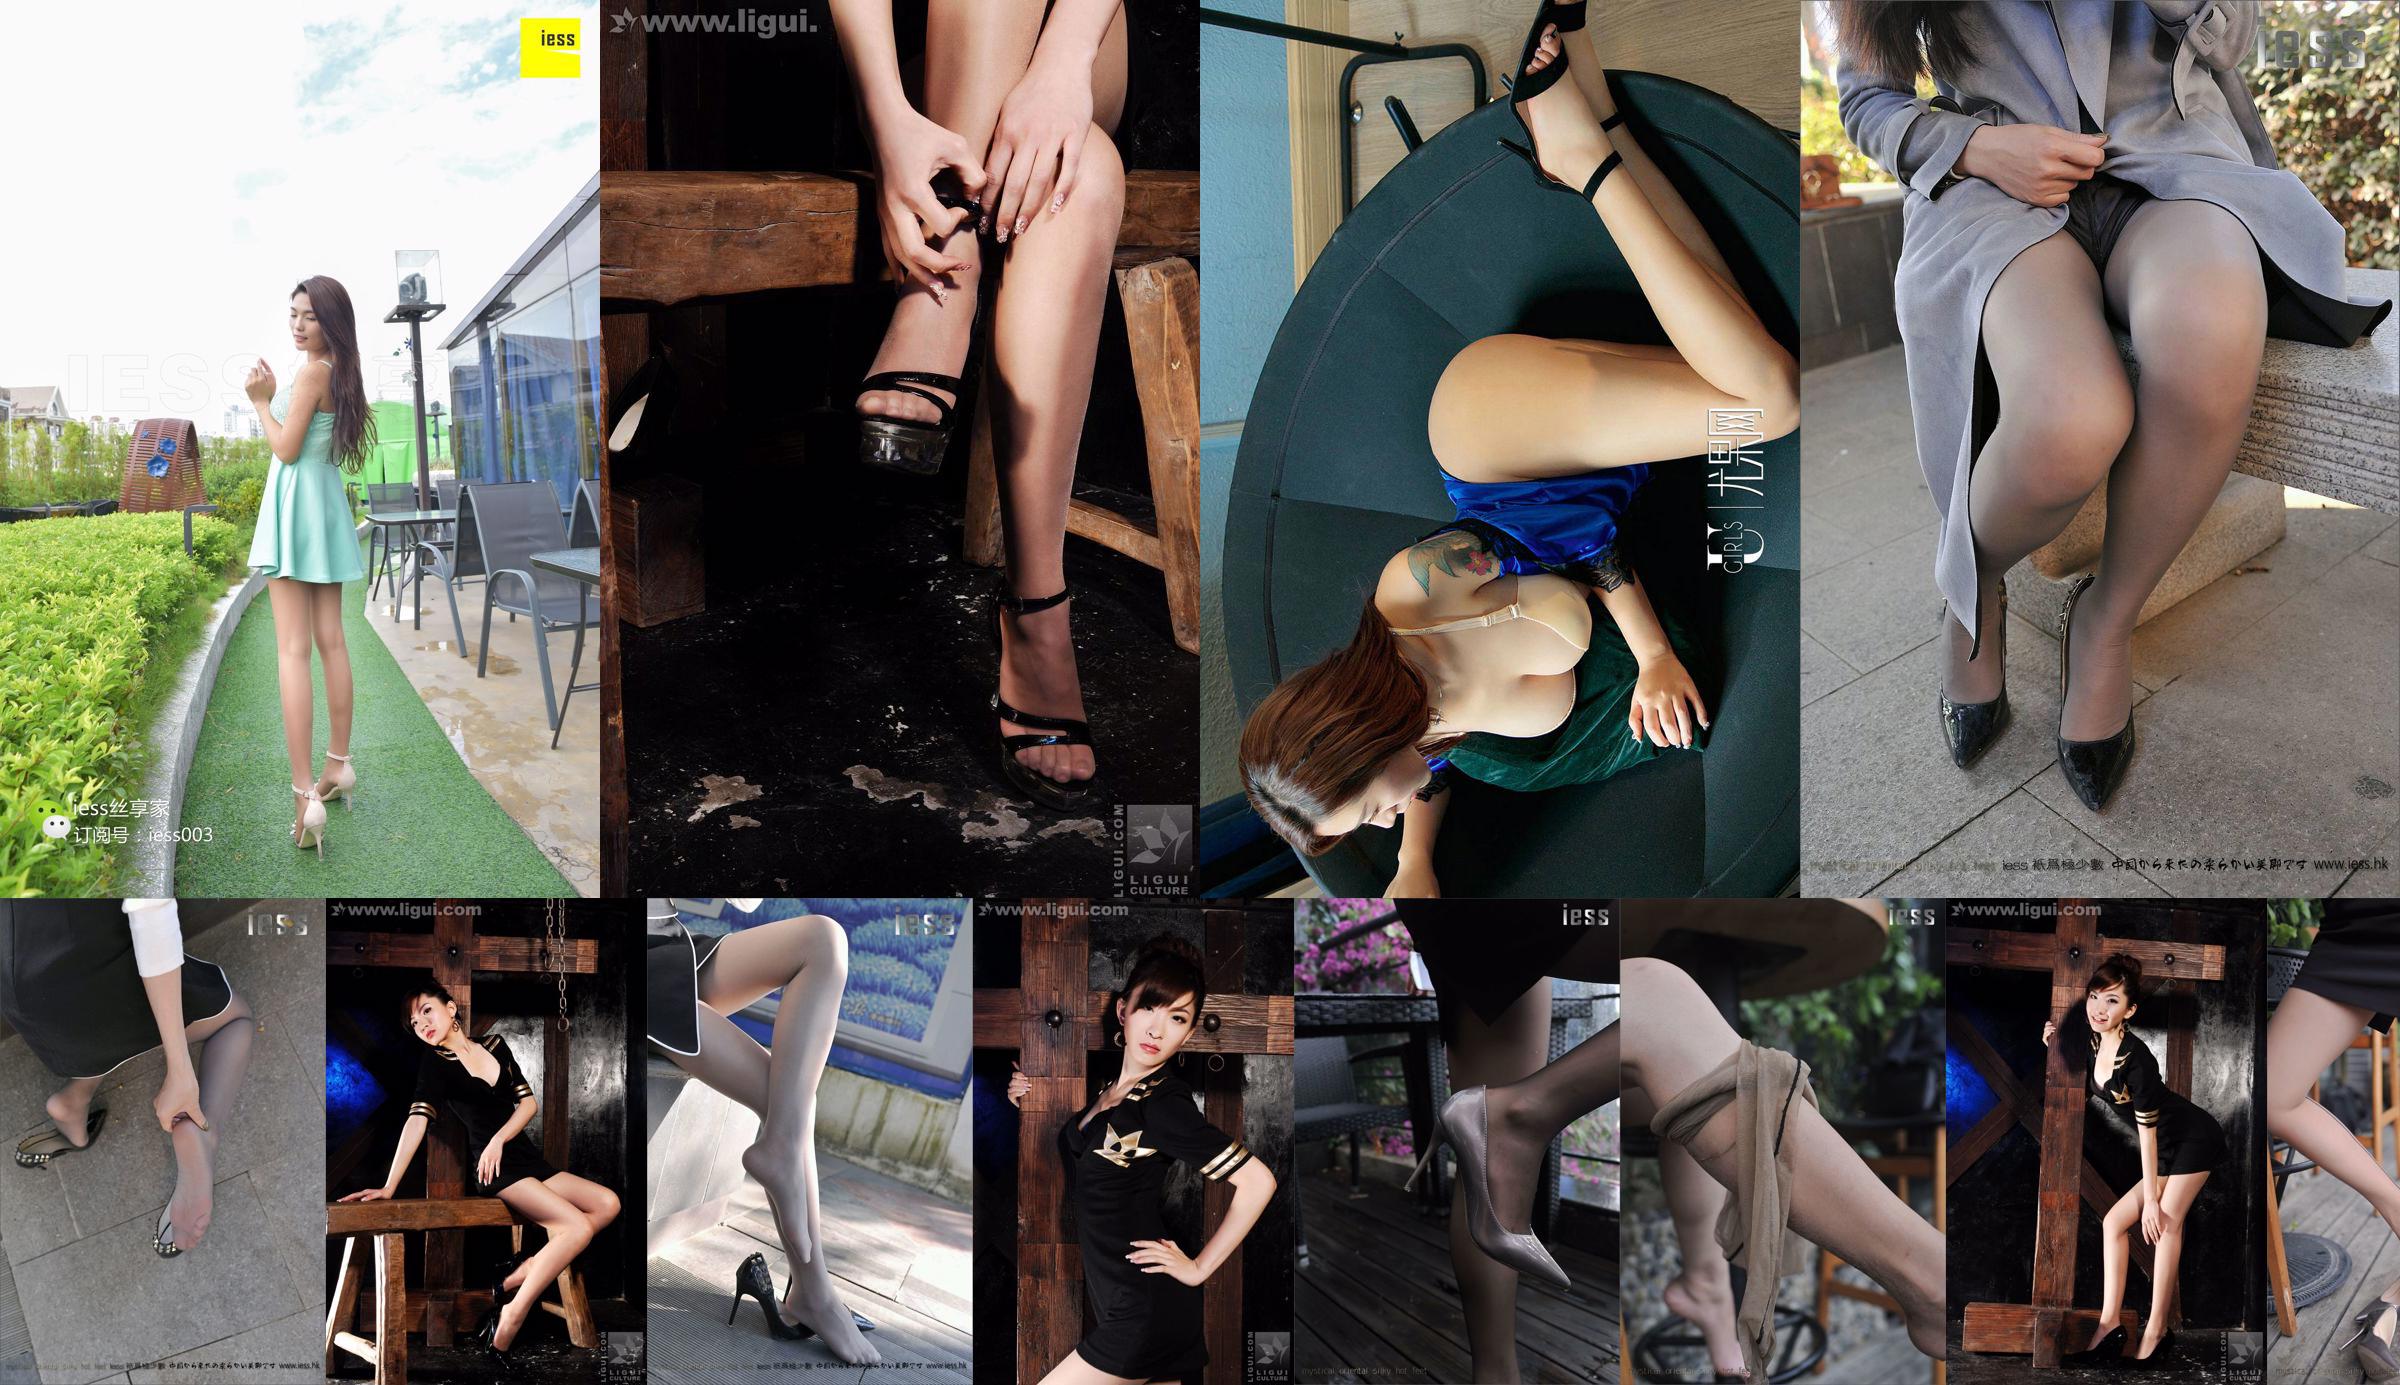 นางแบบโคยูกิ "เสน่ห์ส้นสูงในบรรยากาศคลาสสิก" [丽柜 LiGui] ภาพถ่ายขาสวยและเท้าหยก No.d3fa2e หน้า 4